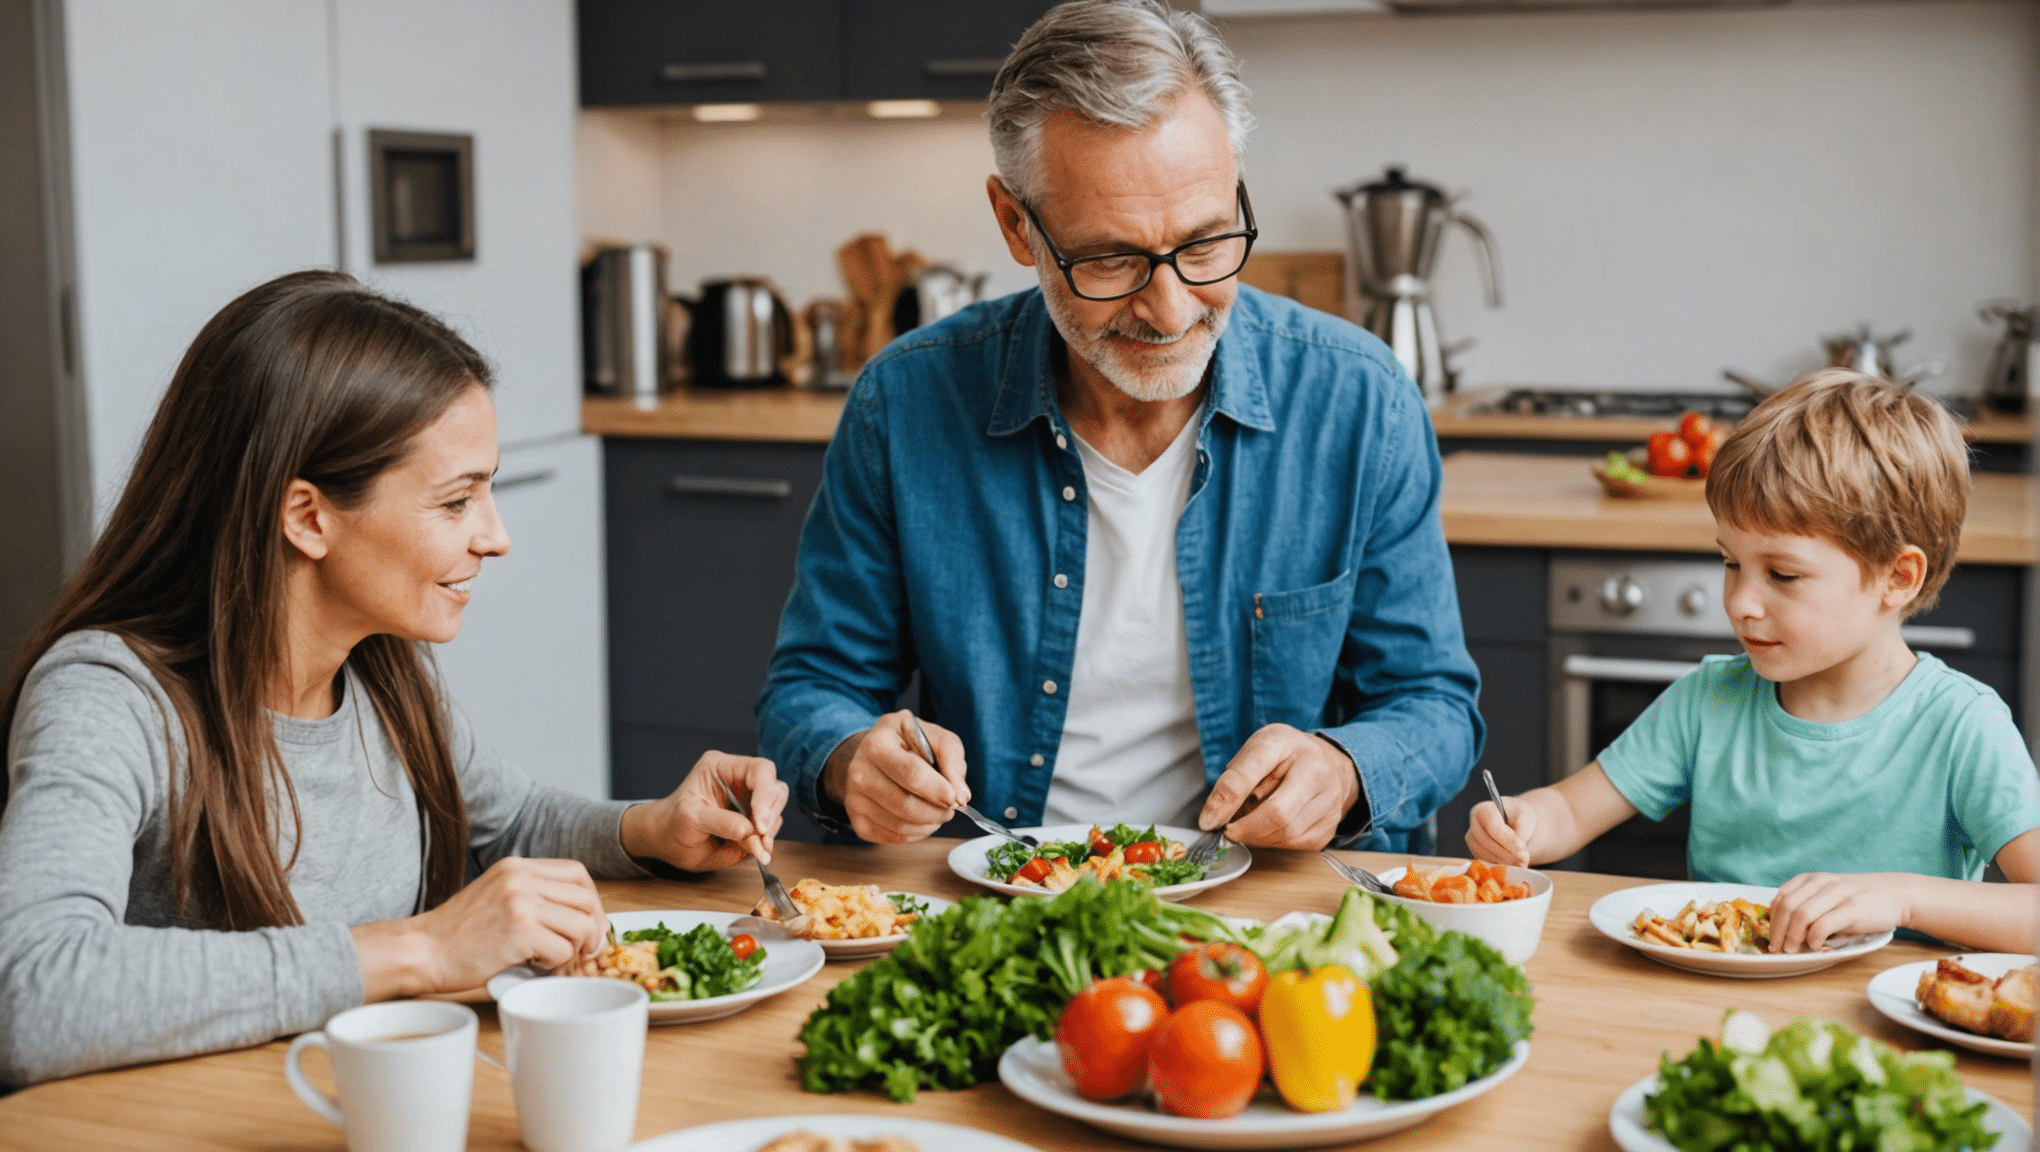 découvrez nos conseils et astuces pour préparer des repas sains et équilibrés adaptés à toute la famille. des idées simples et rapides pour des repas savoureux et nutritifs.